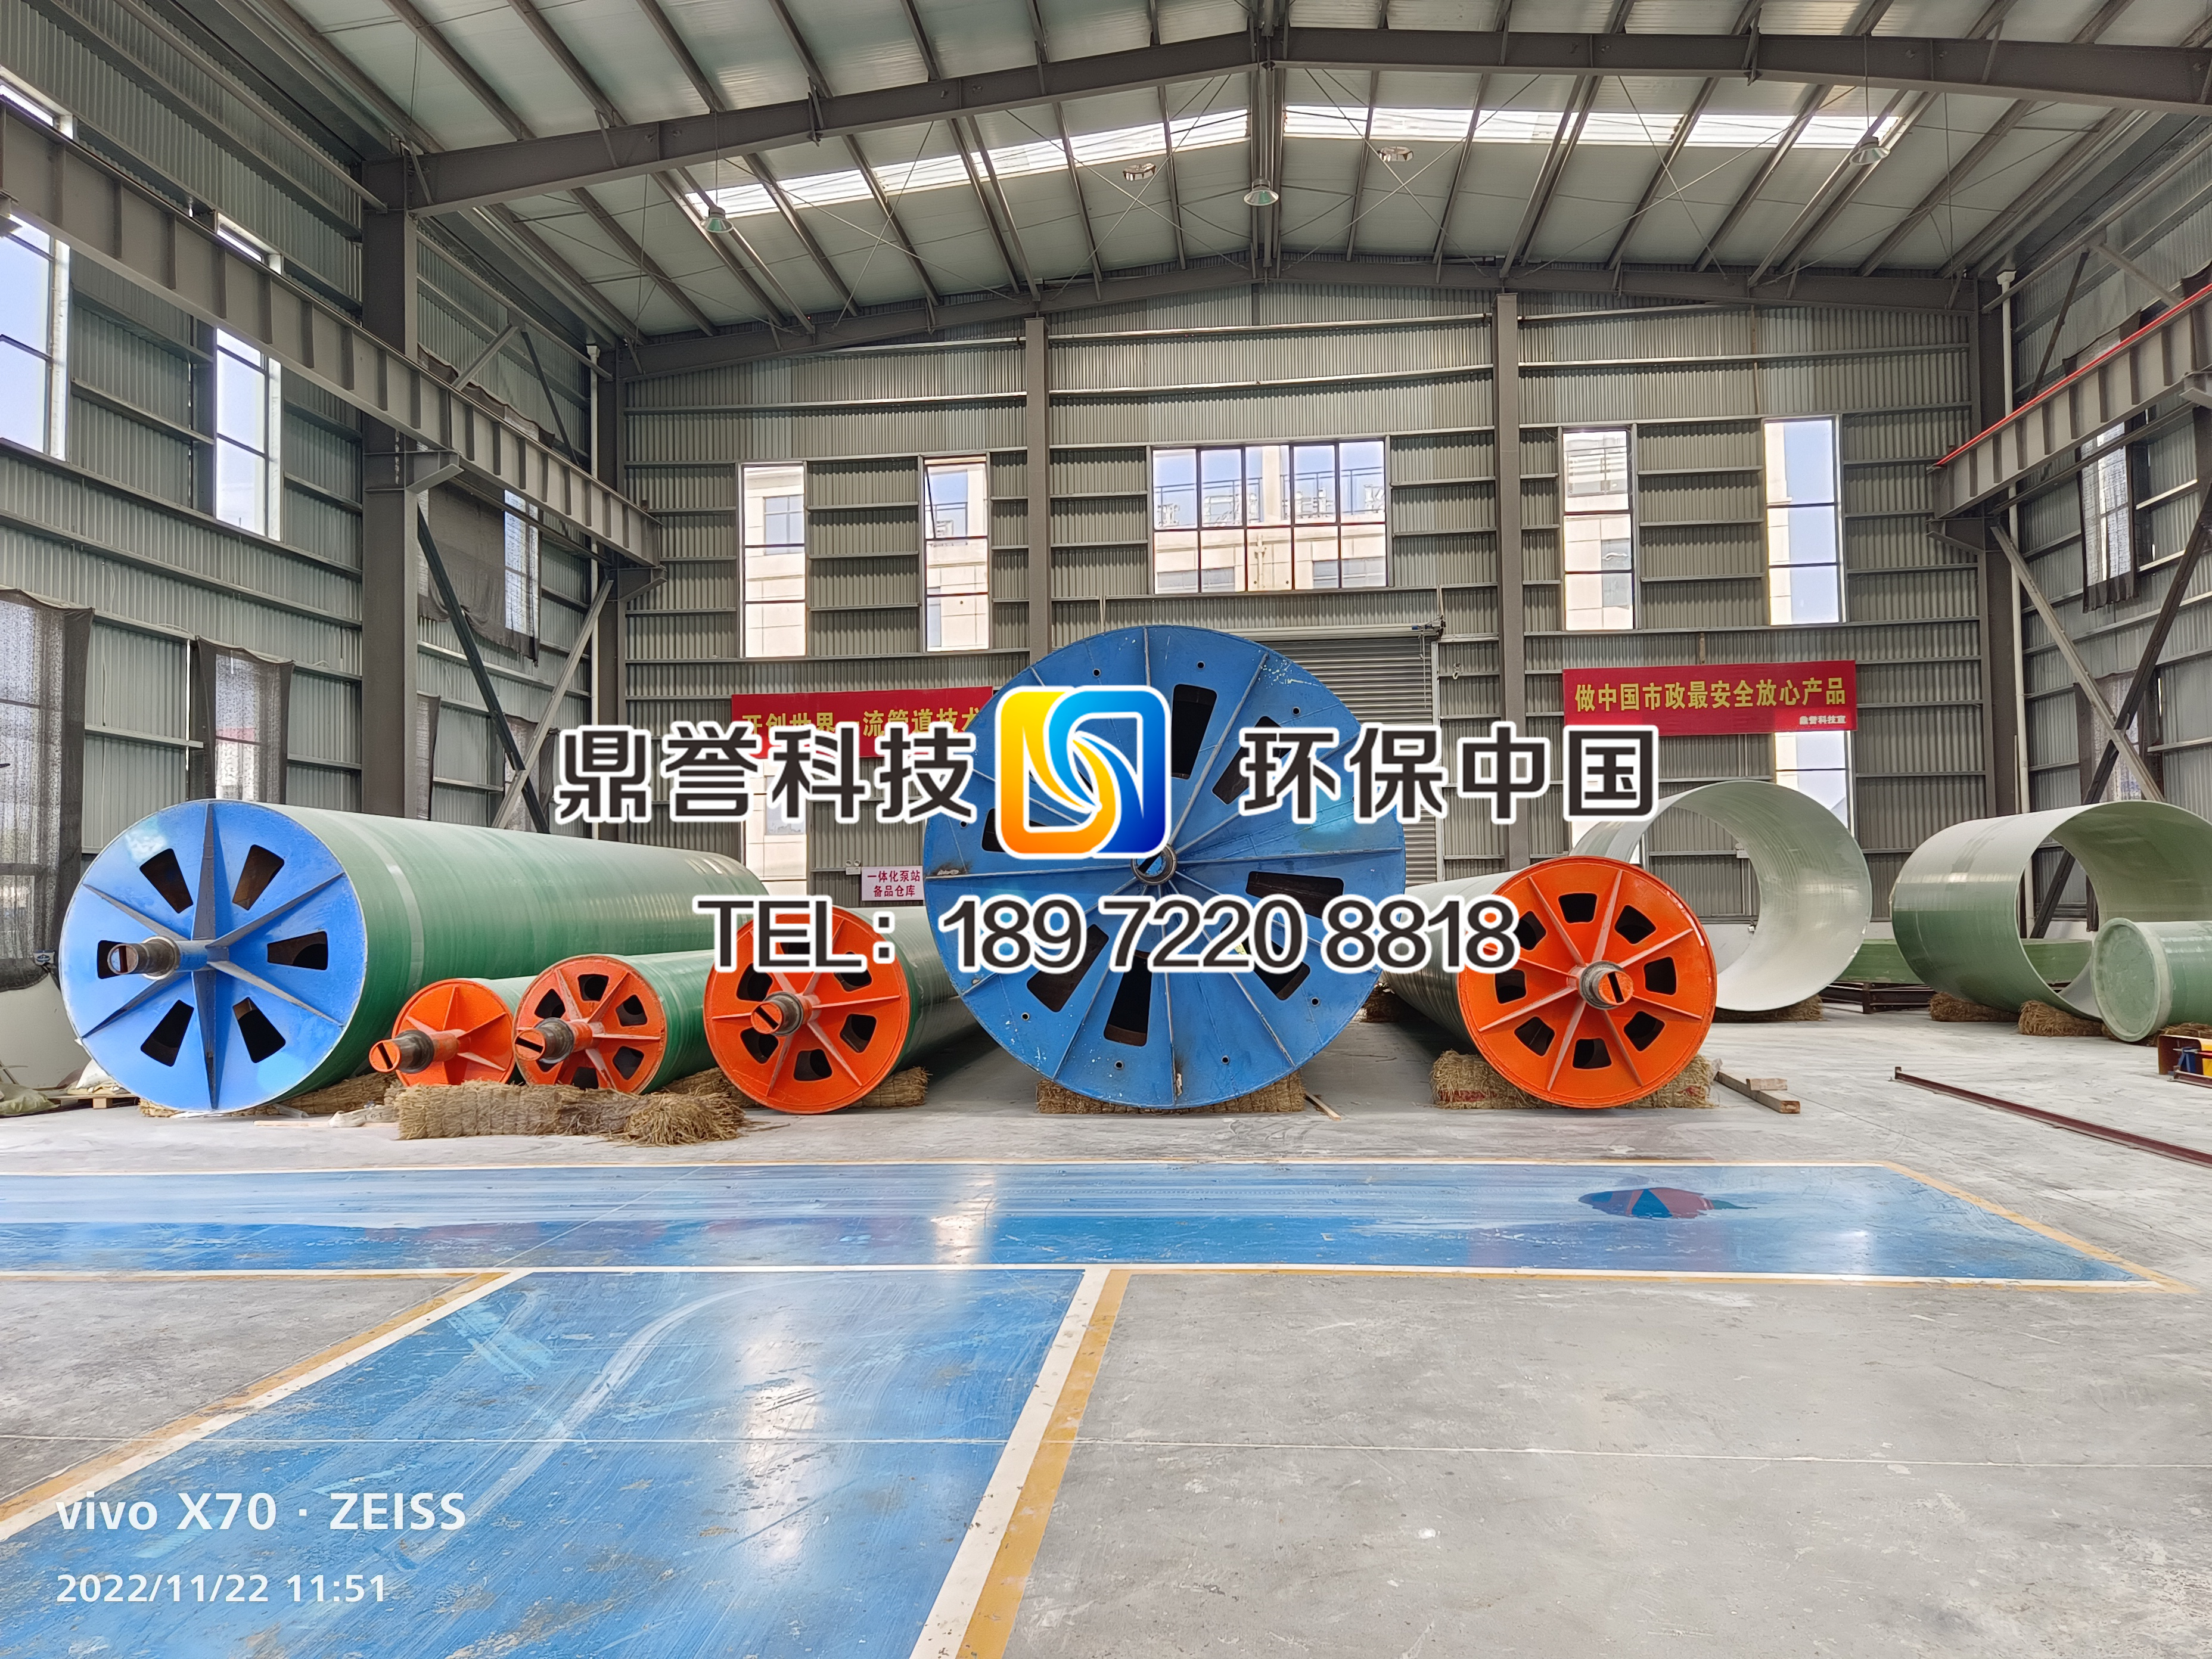 鼎譽公司玻璃鋼儲罐塔器管道生產車間展示